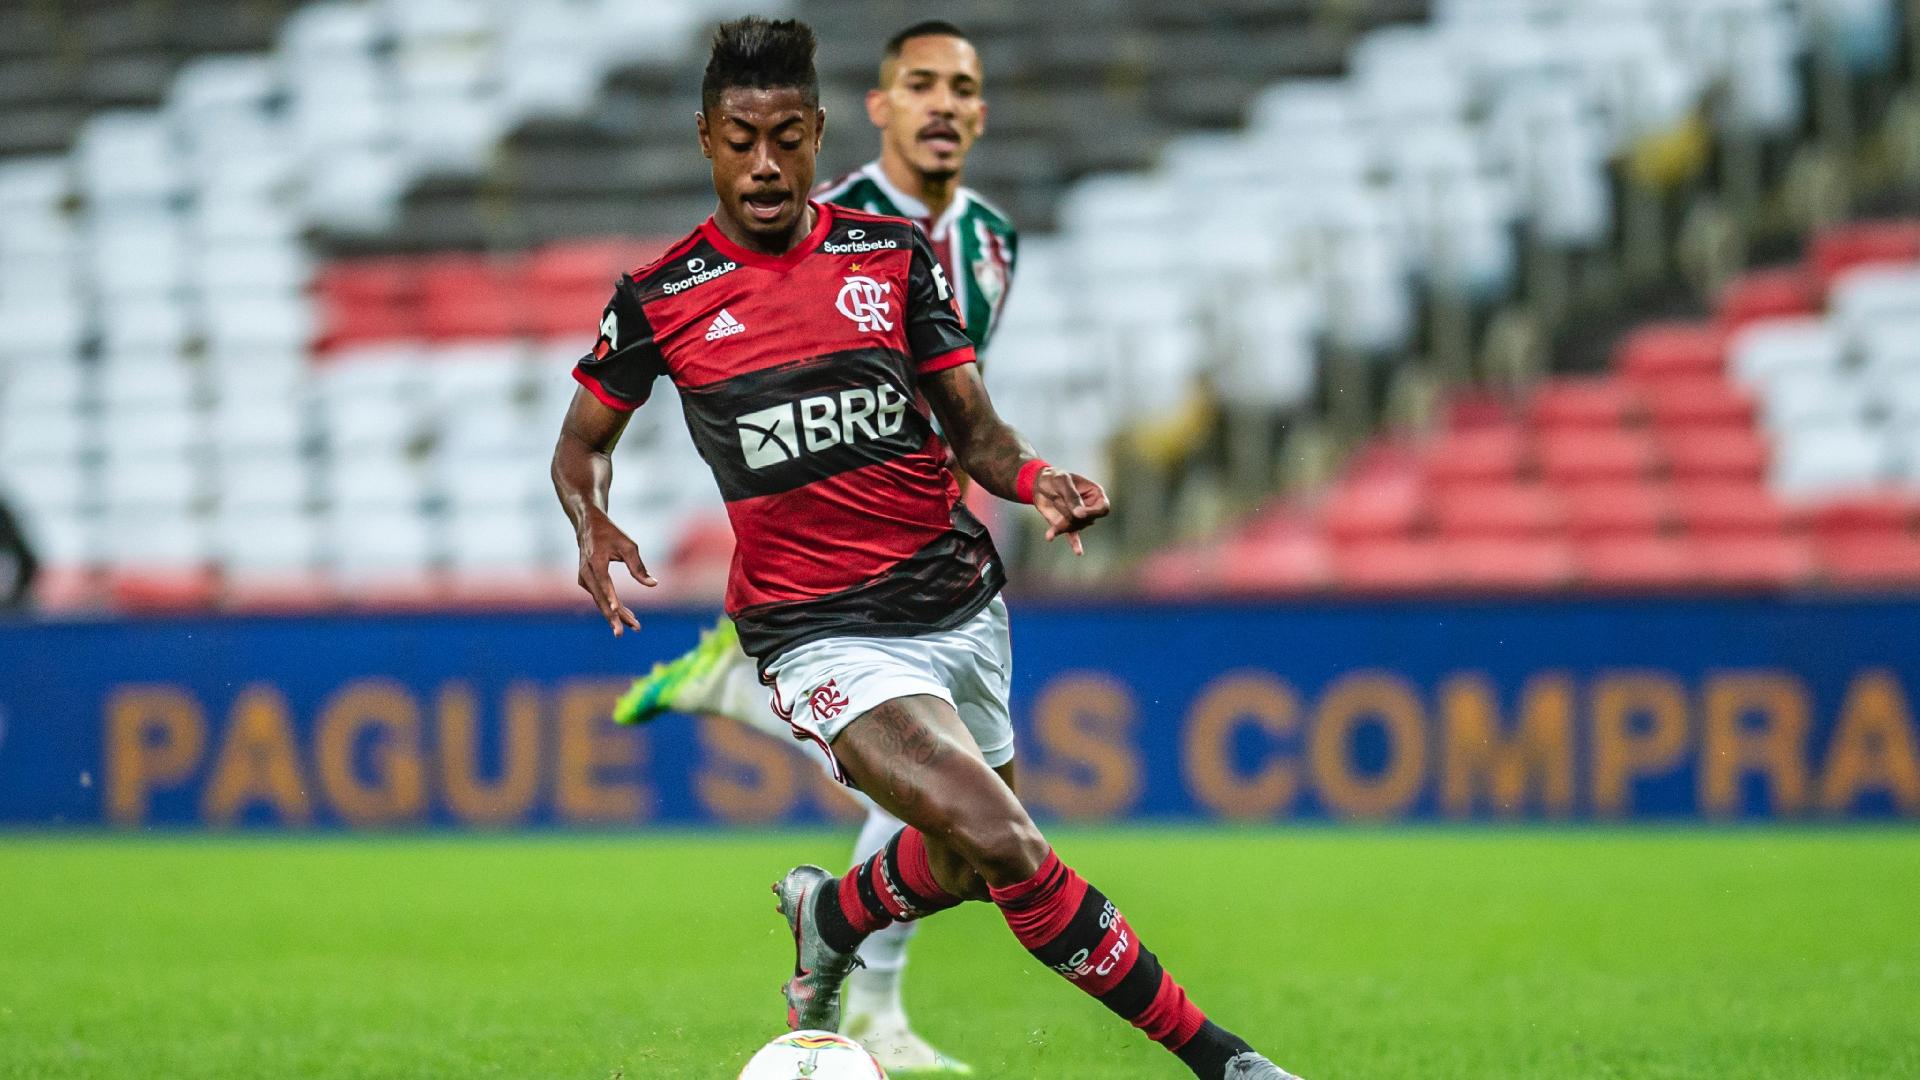 Atacante Bruno Henrique, do Flamengo, na decisão do Carioca 2020 contra o Fluminense